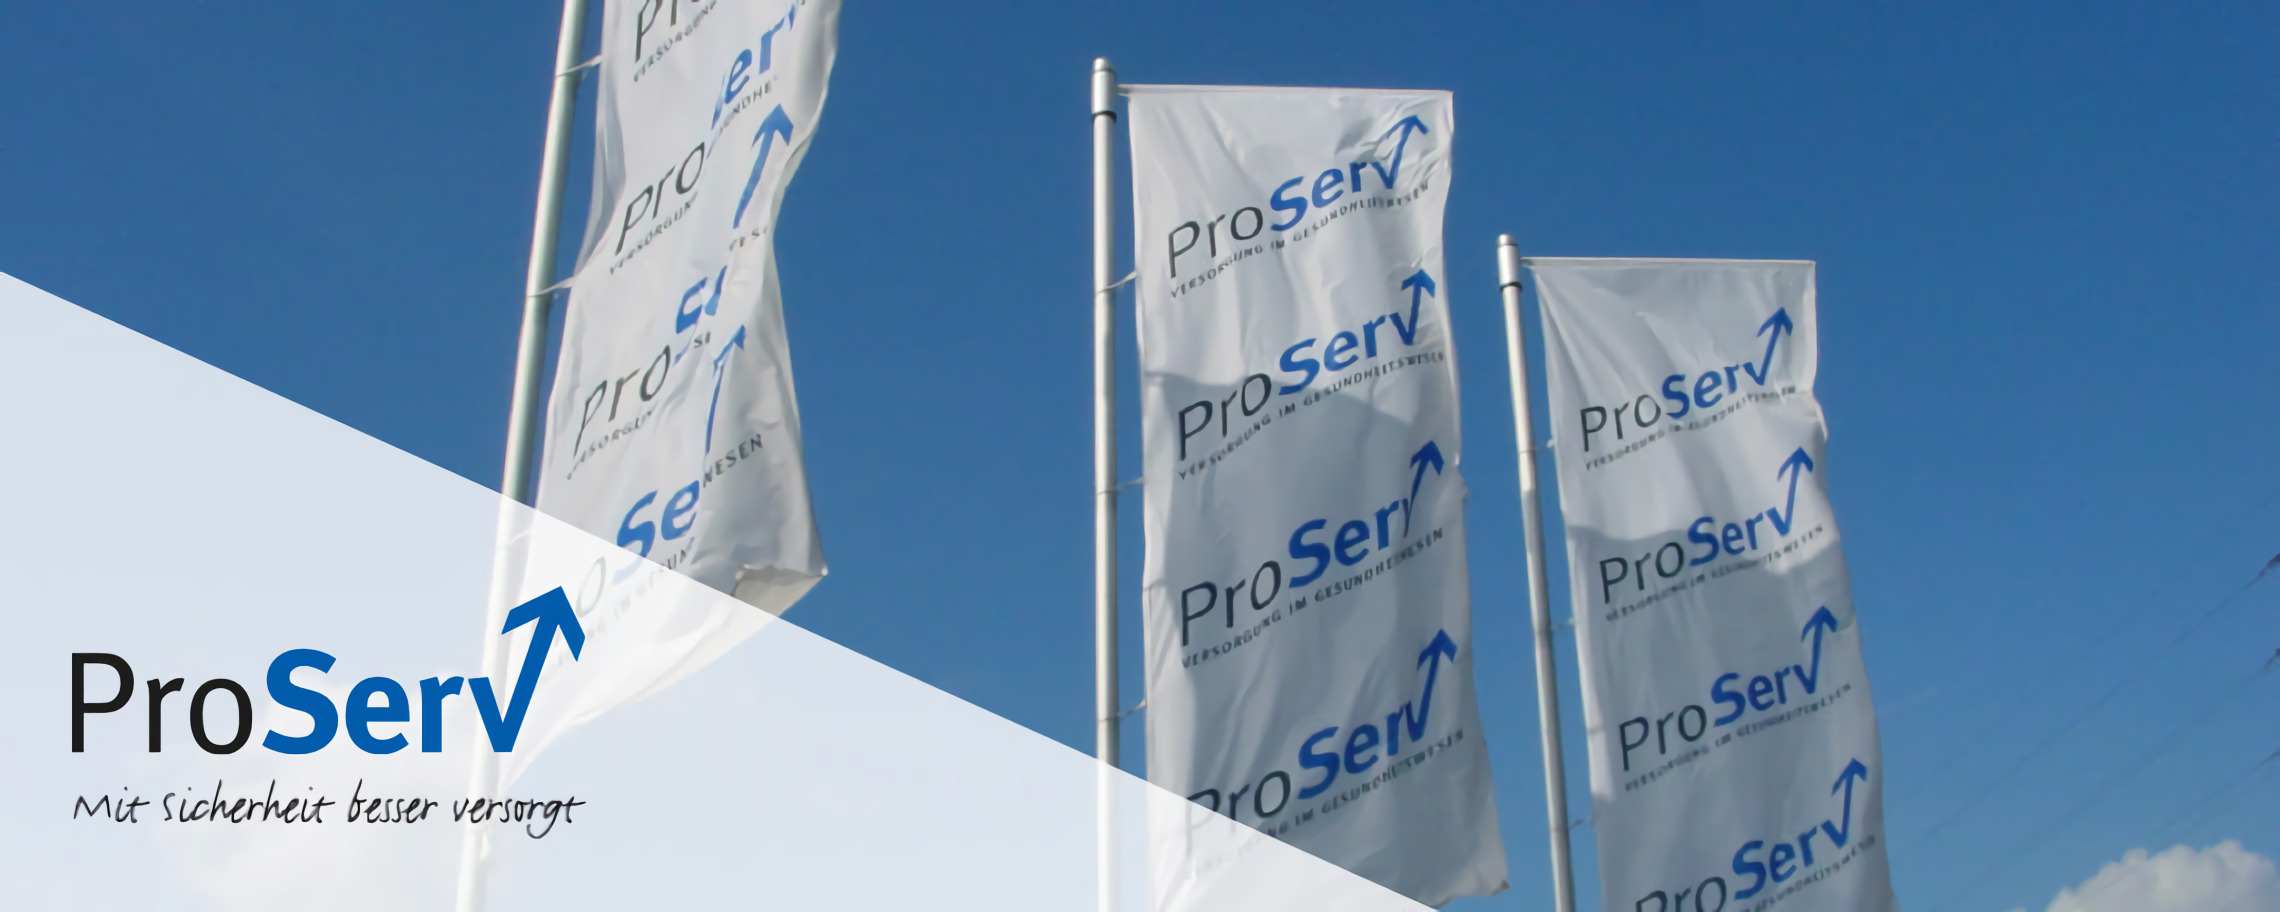 Proserv Management GmbH Pulheim, Versorgung im Gesundheitswesen